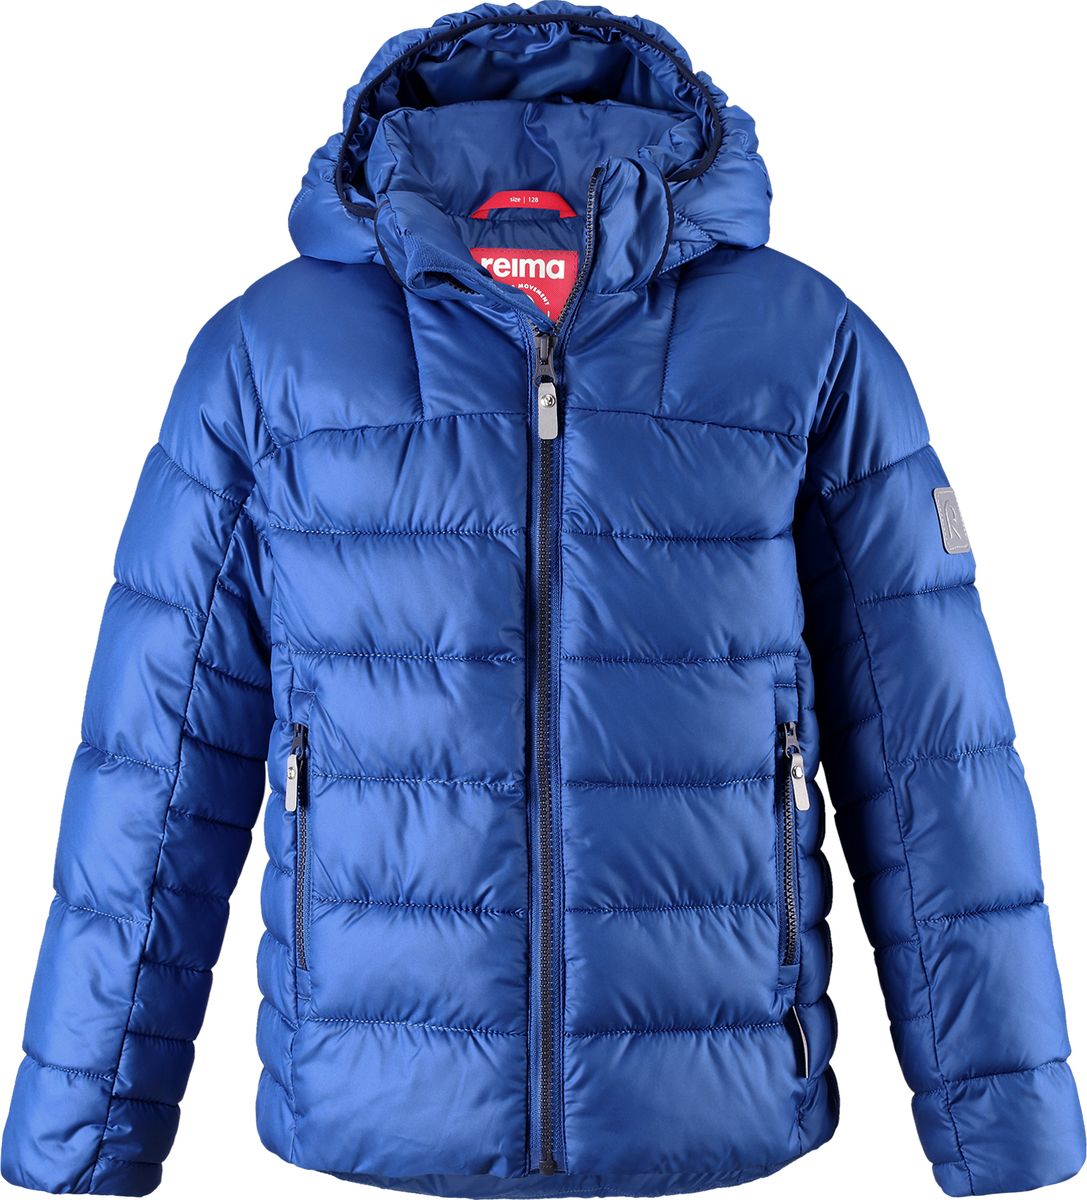 Куртка для мальчика Reima Petteri, цвет: синий. 5313436680. Размер 146